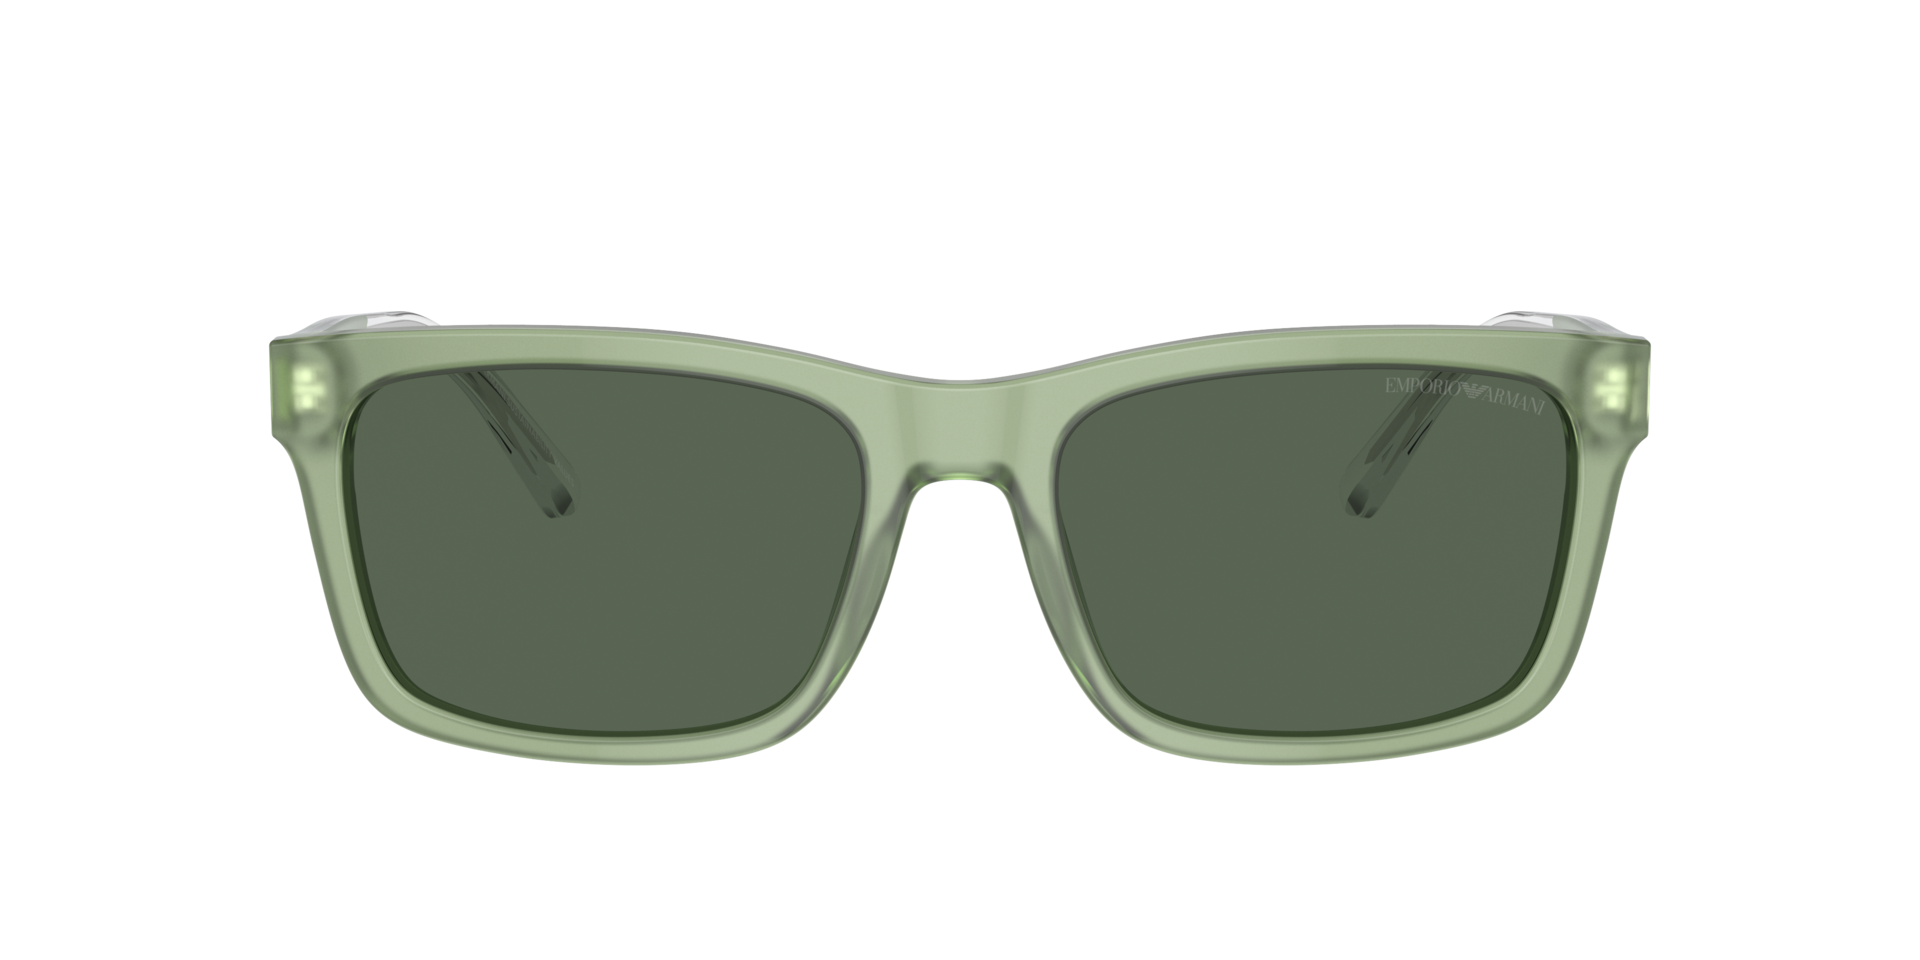 Das Bild zeigt die Sonnenbrille EA4224 609471 von der Marke Emporio Armani in grün.